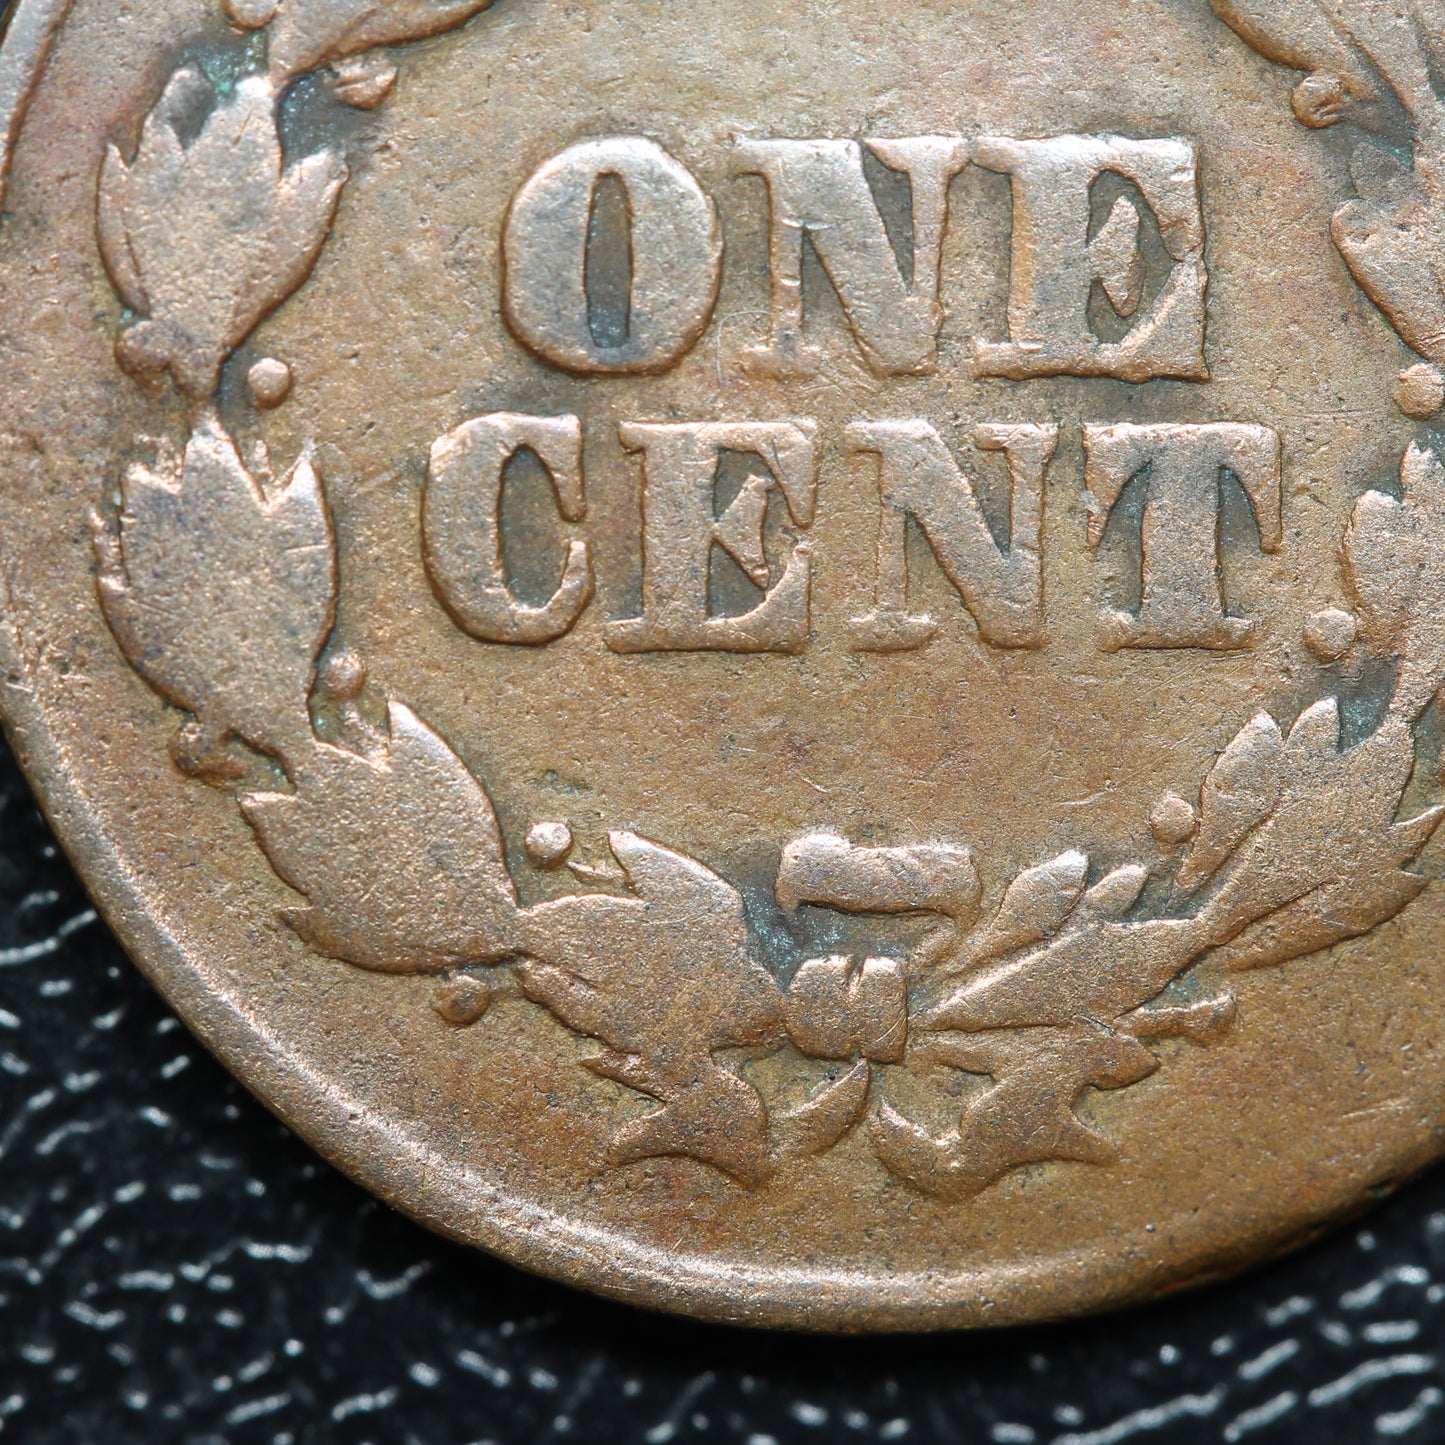 1863 Civil War Token "Not One Cent" F-61/355a